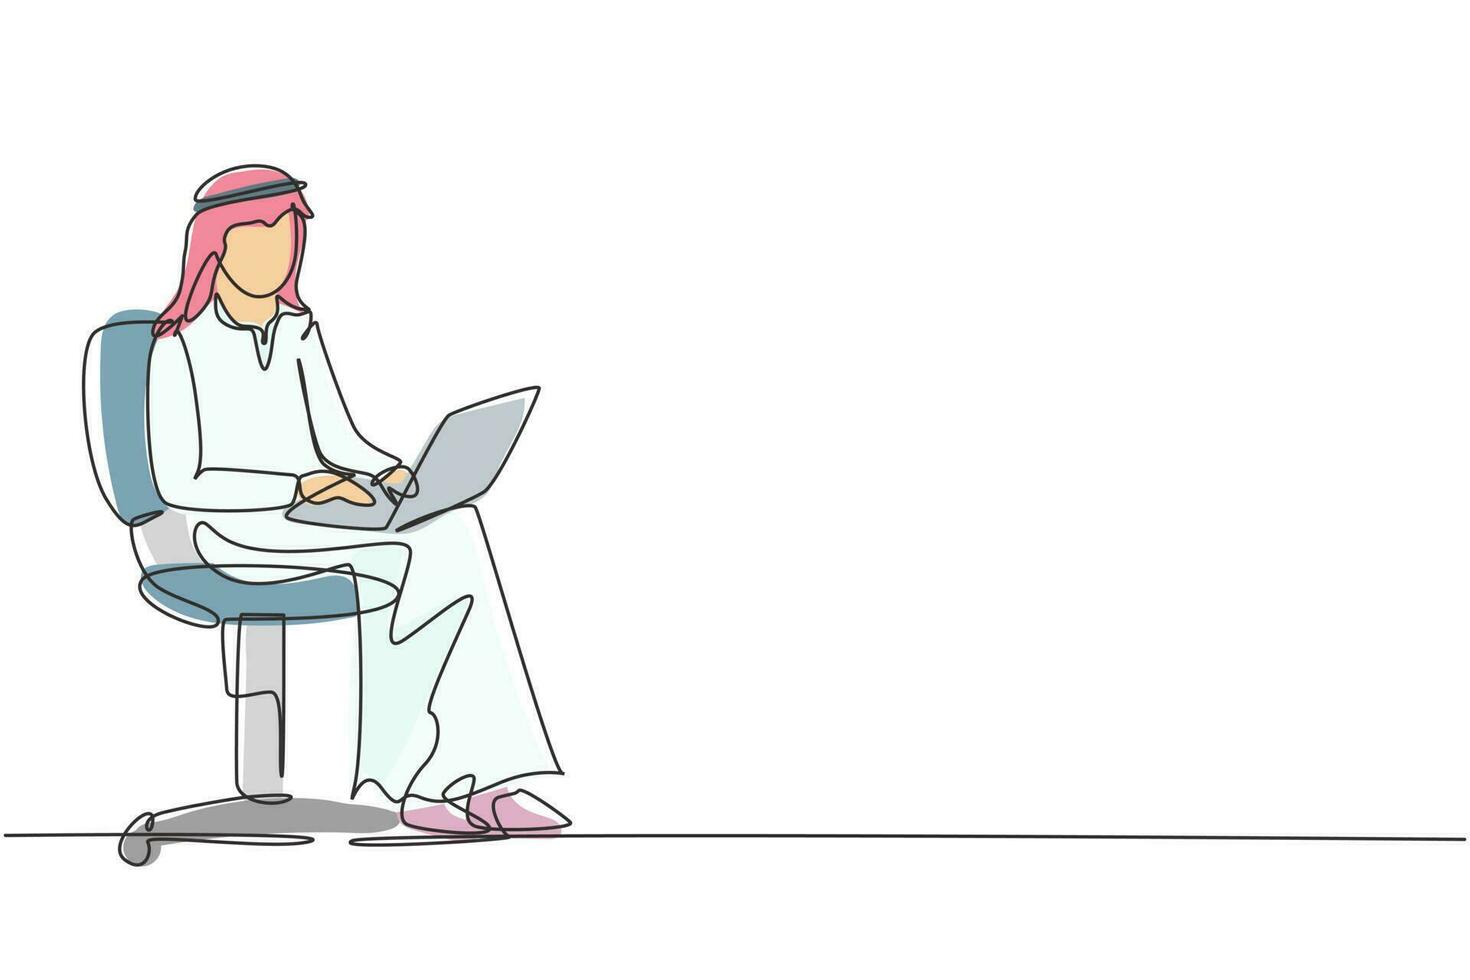 enda kontinuerlig linjeritning arabisk hane med laptop sitter på stolen. frilans, distansutbildning, onlinekurser och studiekoncept. dynamisk en rad rita grafisk design vektorillustration vektor